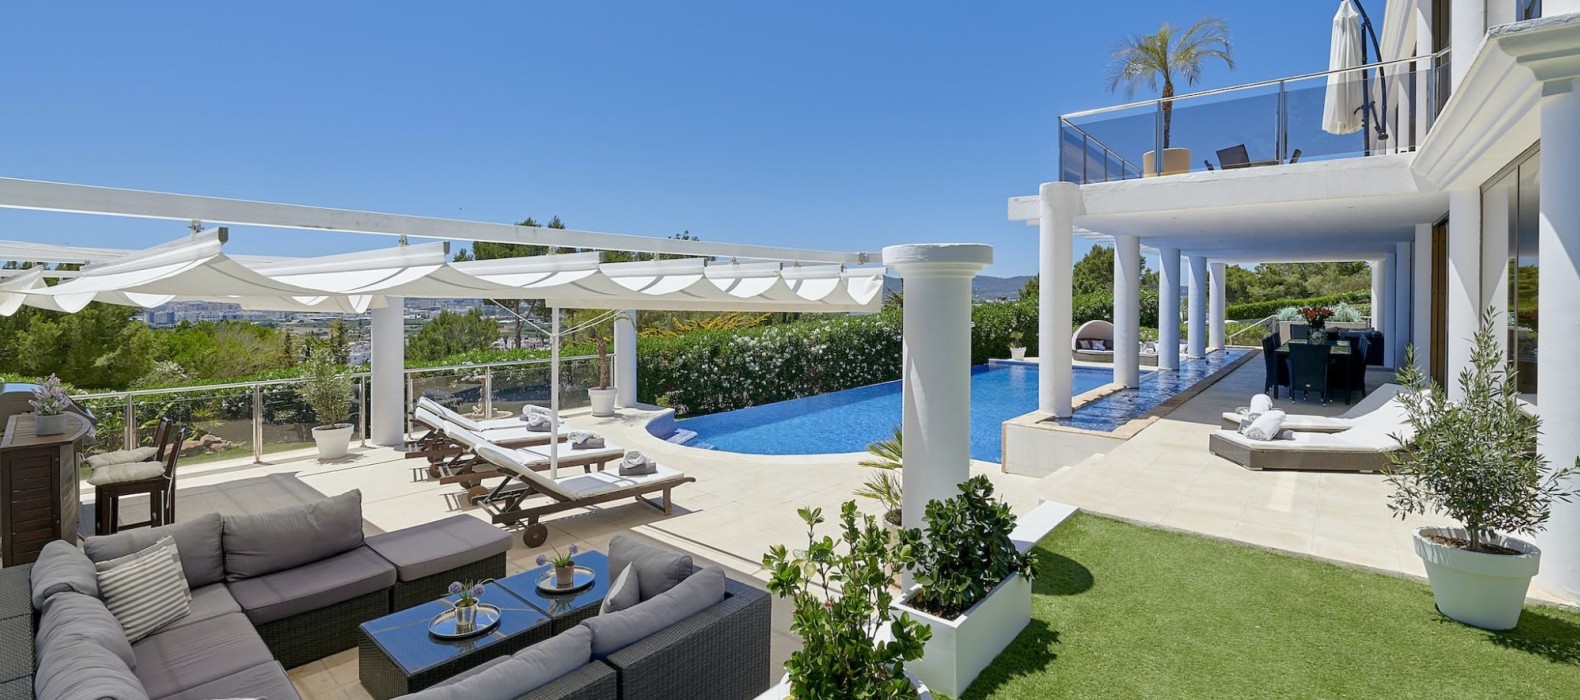 Exterior pool area of Villa Riva Alto in Ibiza